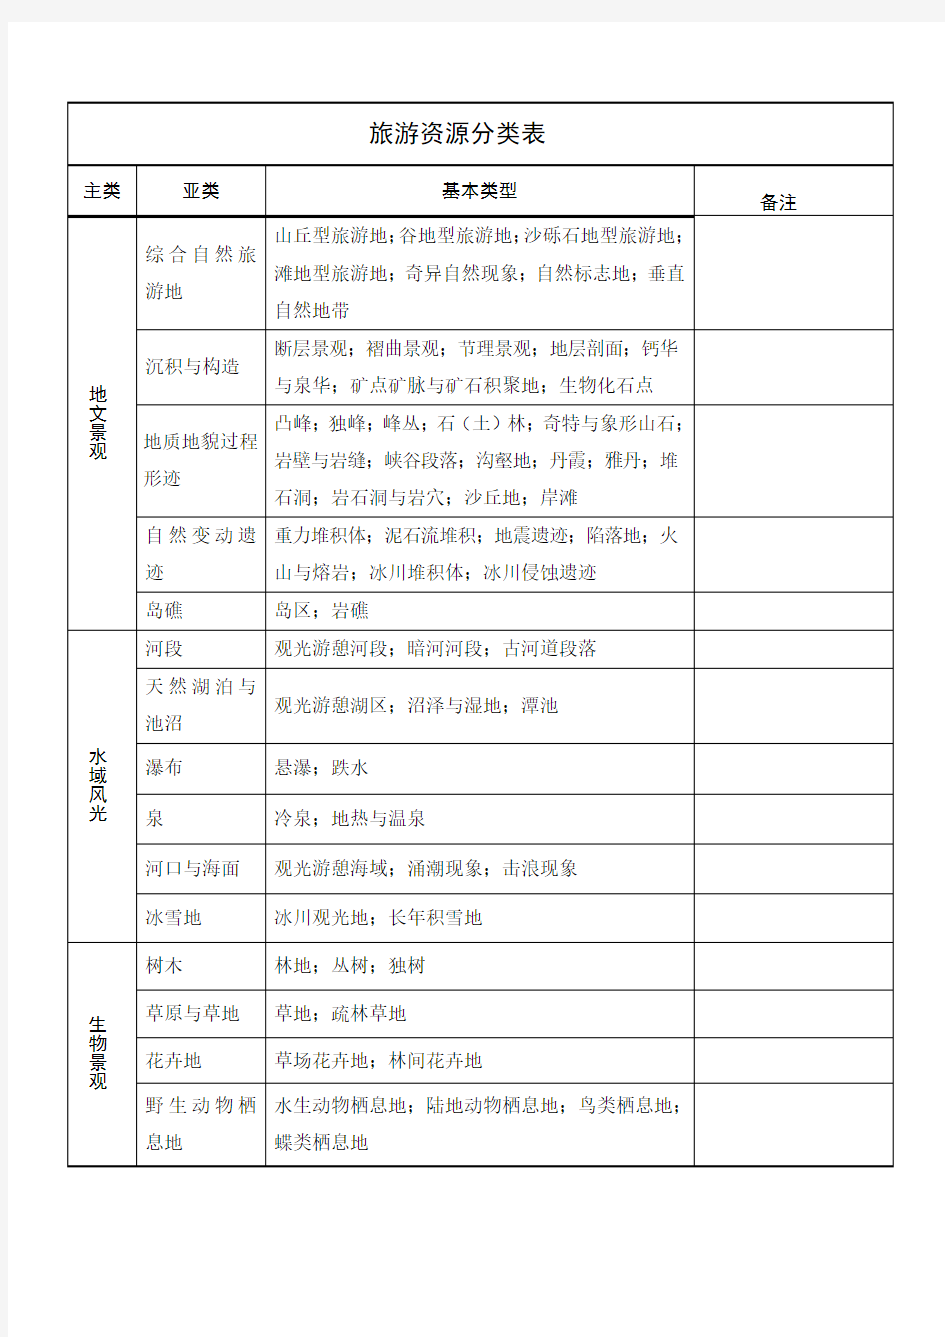 2003年《中国旅游资源分类表》